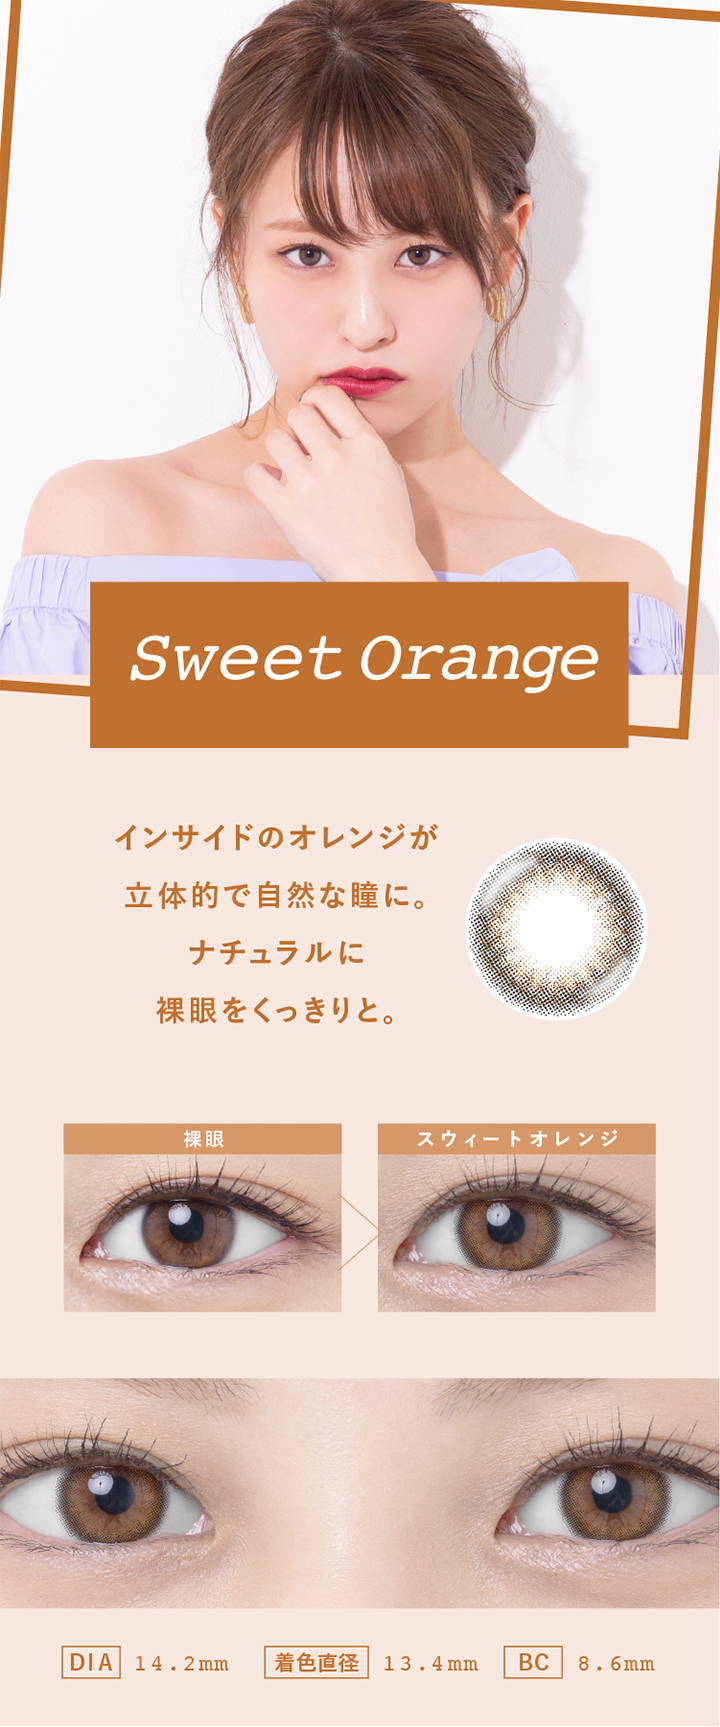 Sweet Orange(スウィートオレンジ),インサイドのオレンジが立体的で自然な瞳に。ナチュラルに裸眼をくっきりと,裸眼とスウィートオレンジの装用写真の比較,DIA14.2mm,着色直径13.4mm,BC8.6mm|スウィートハート(SweetHeart)コンタクトレンズ